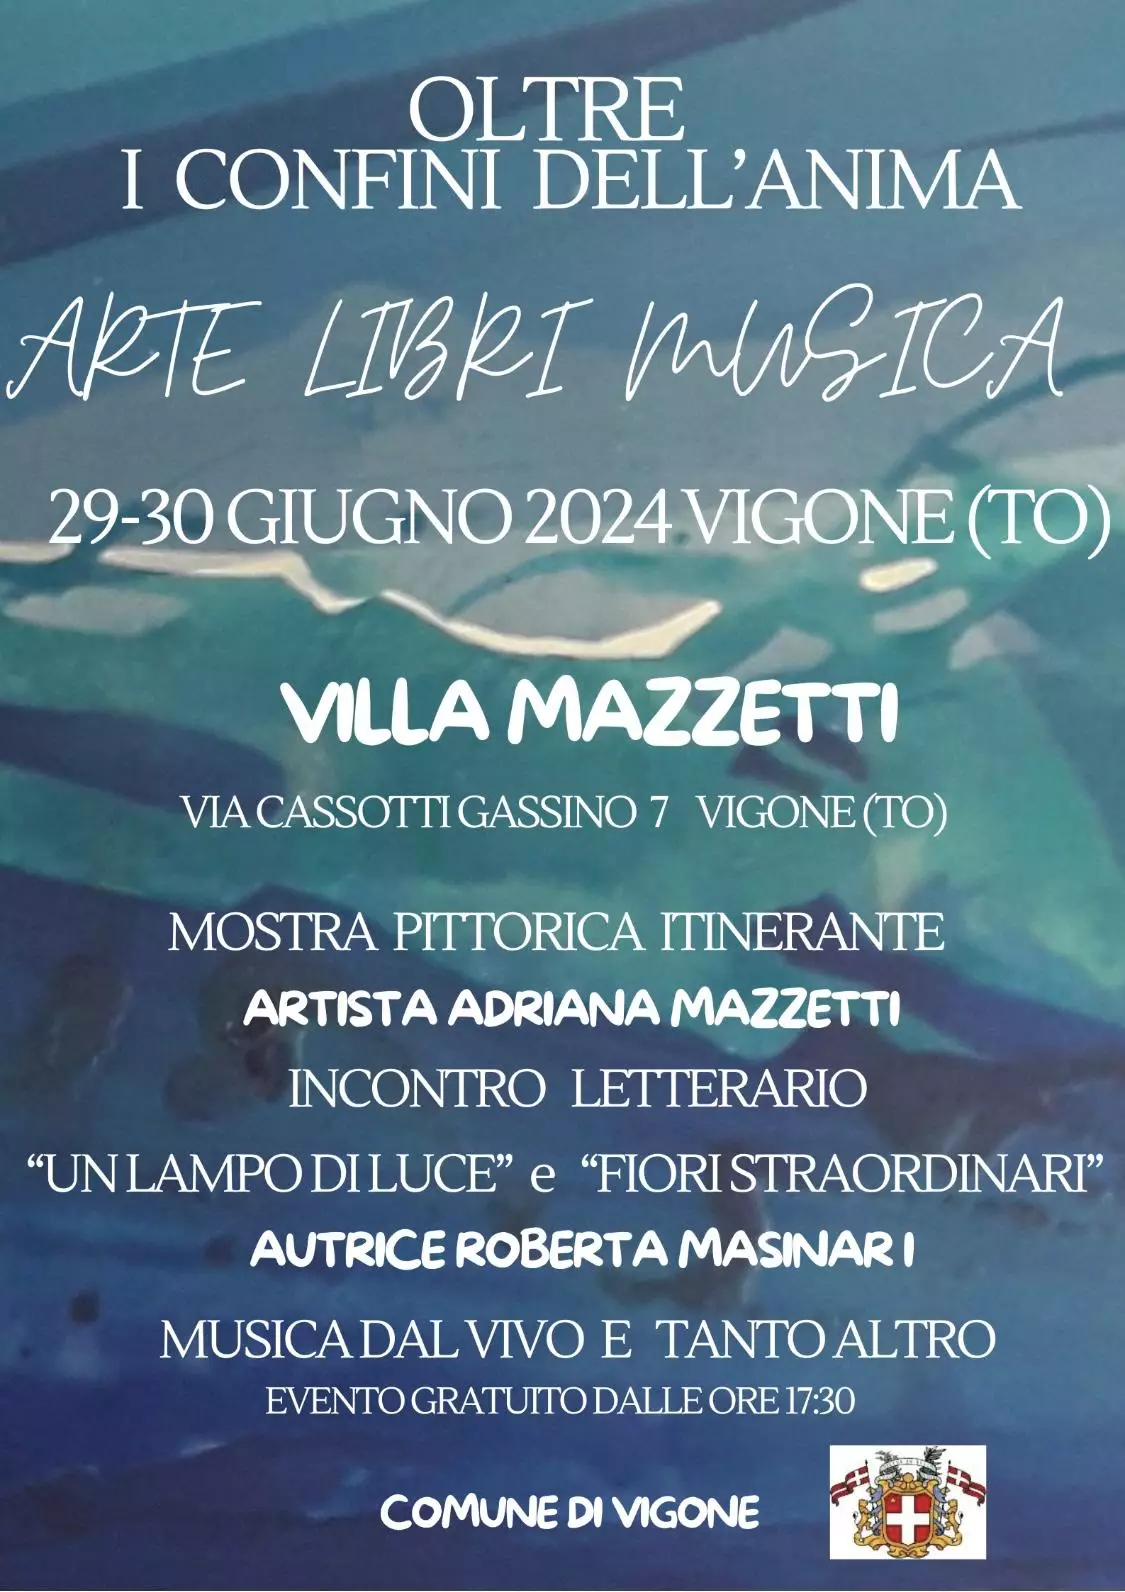 Locandina mostra itinerante Adriana Mazzetti